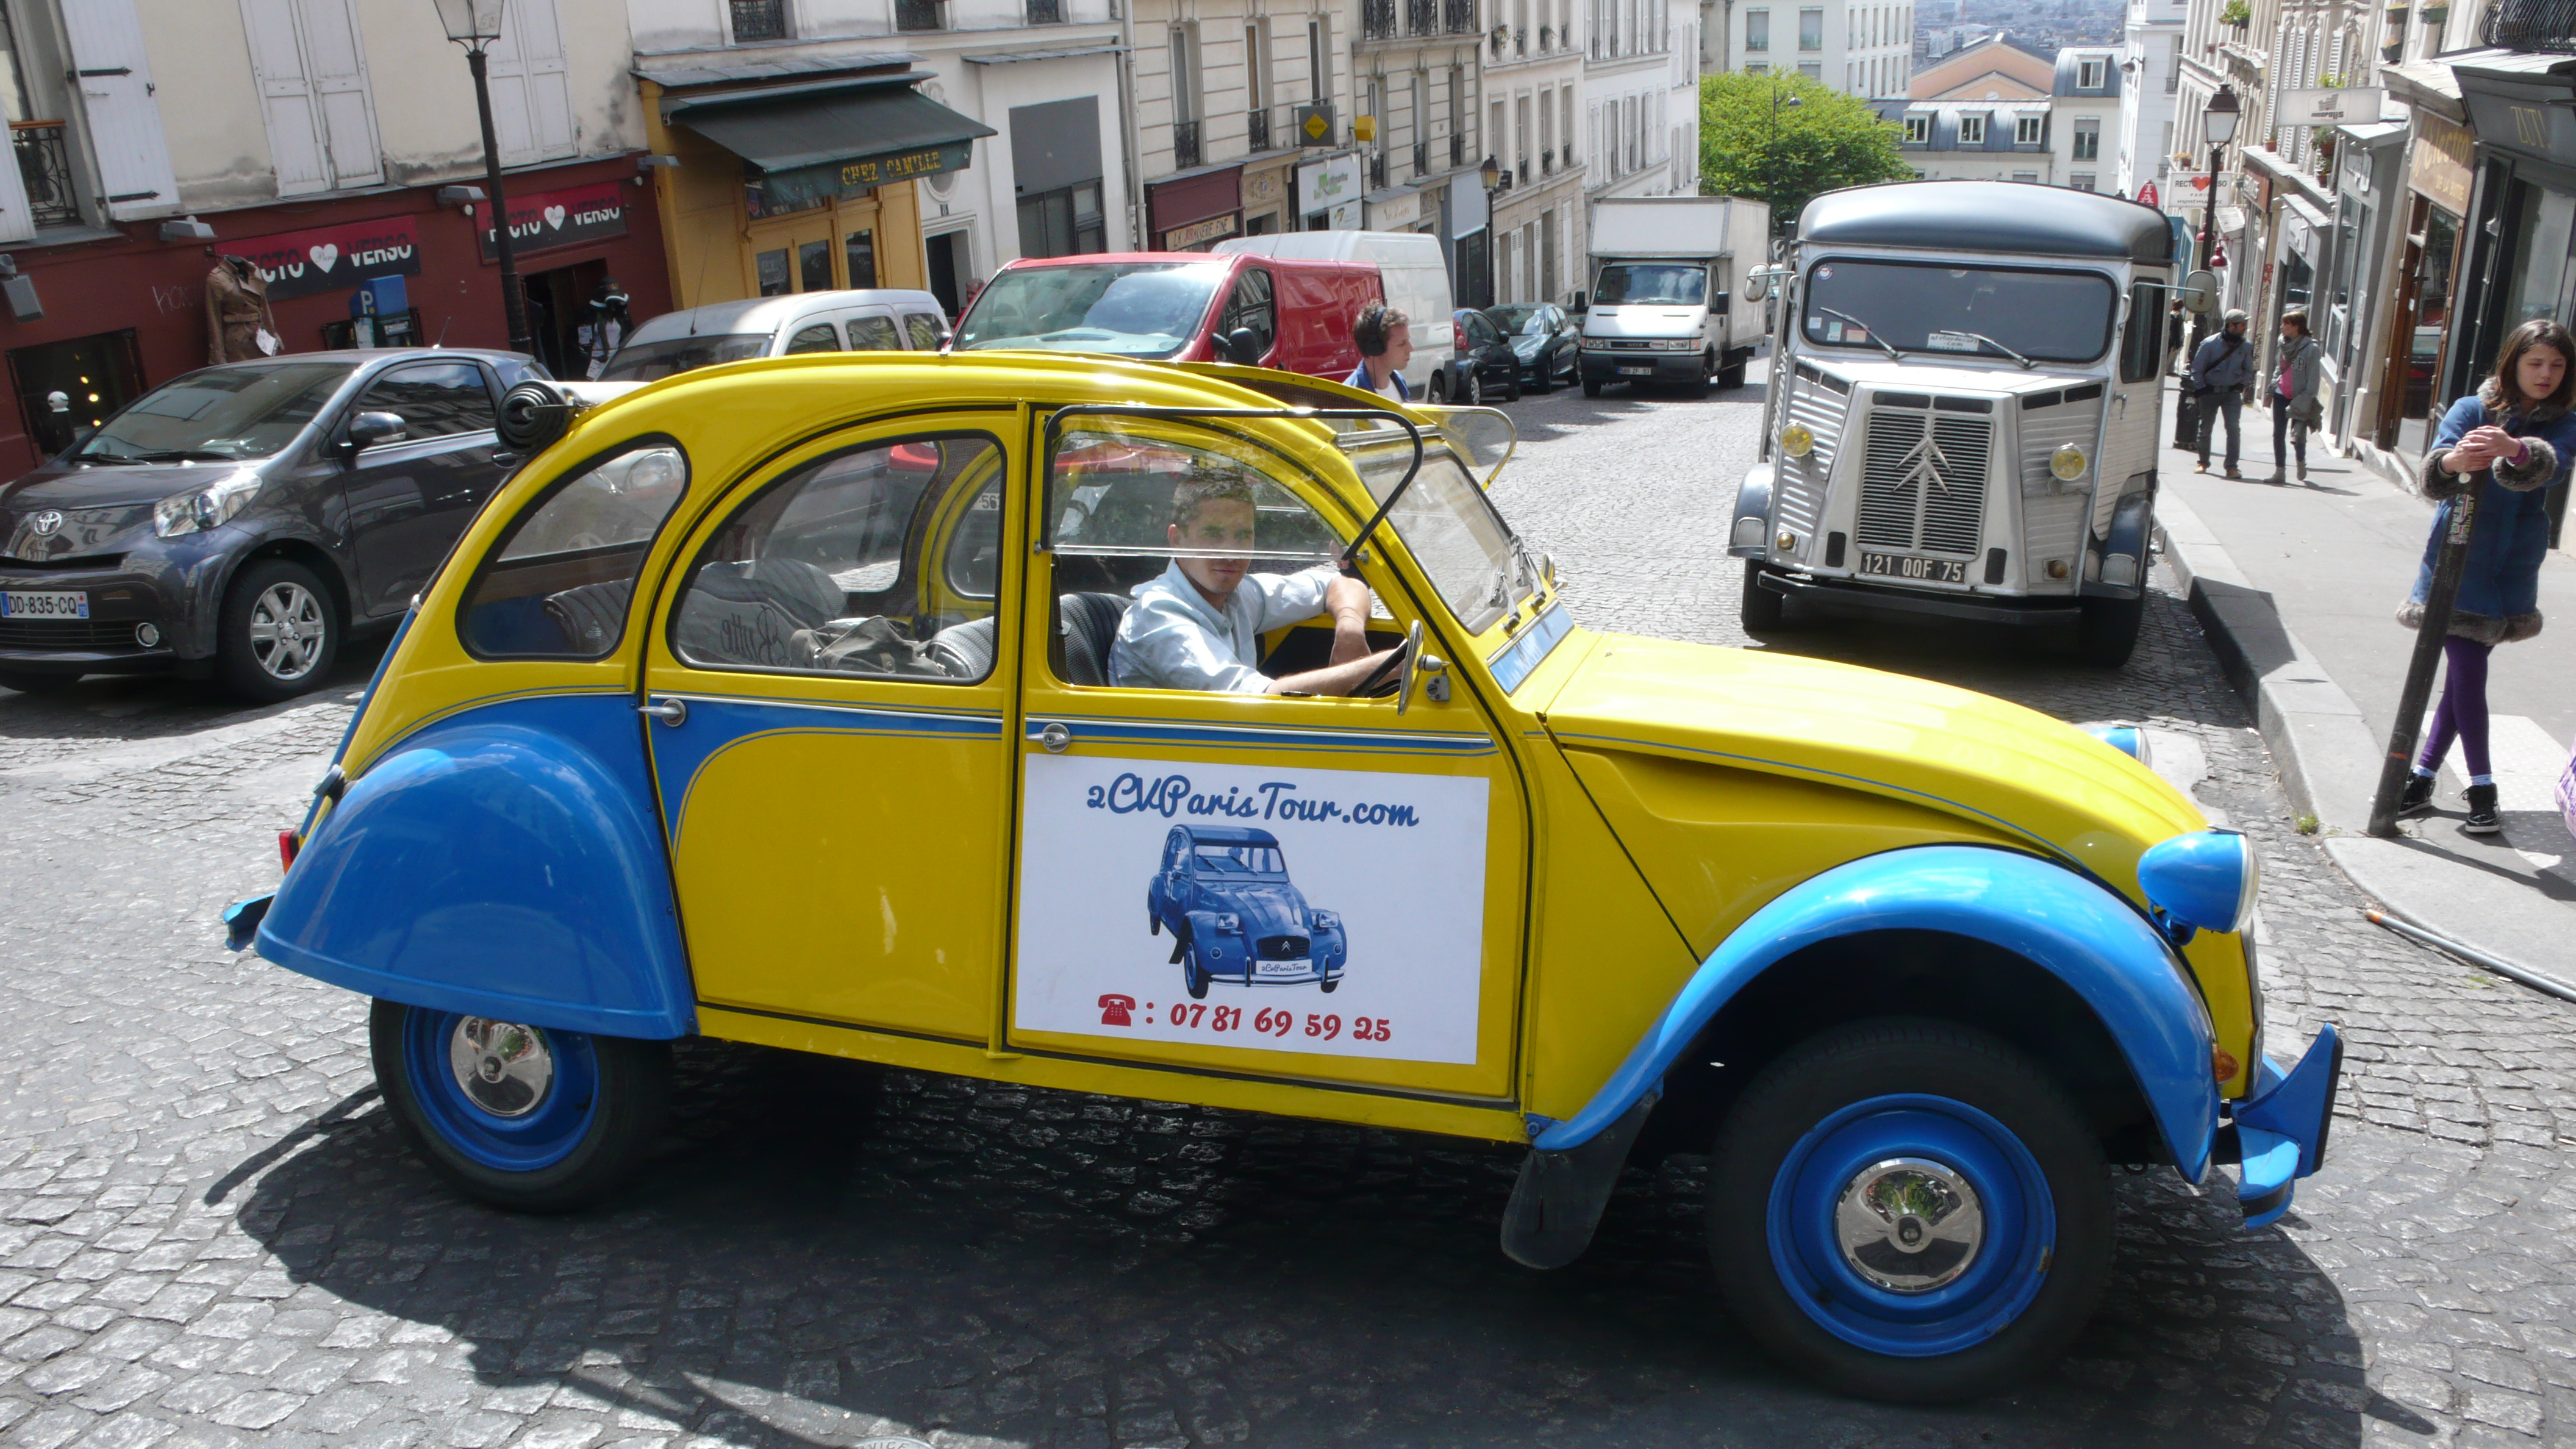 Paris Tour - Visit Paris by 2CV! The 2CV and the Citroën vintage truck